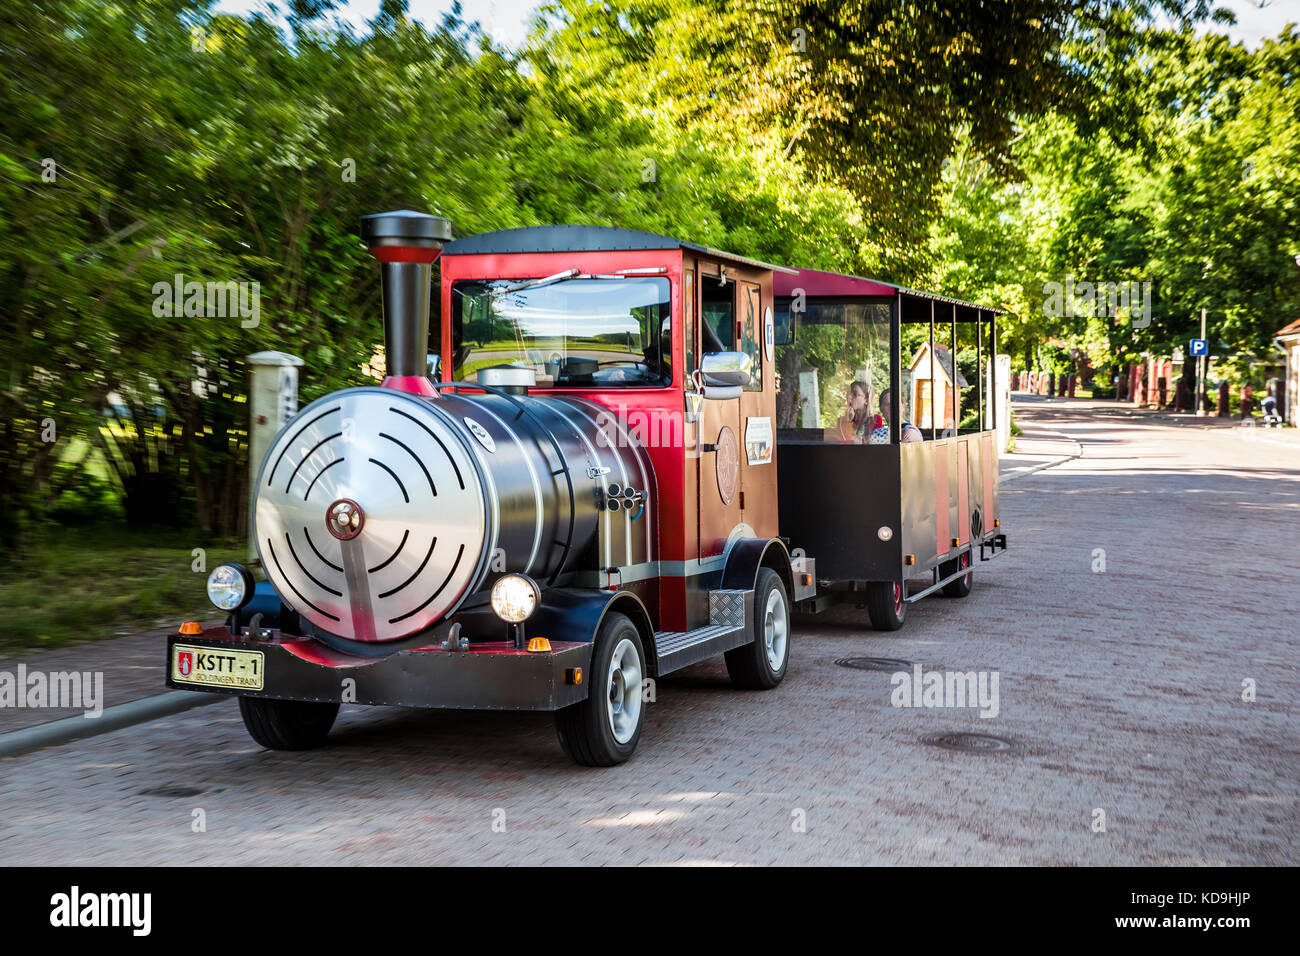 Small toursit train on the city street in Kuldiga, Latvia Stock Photo